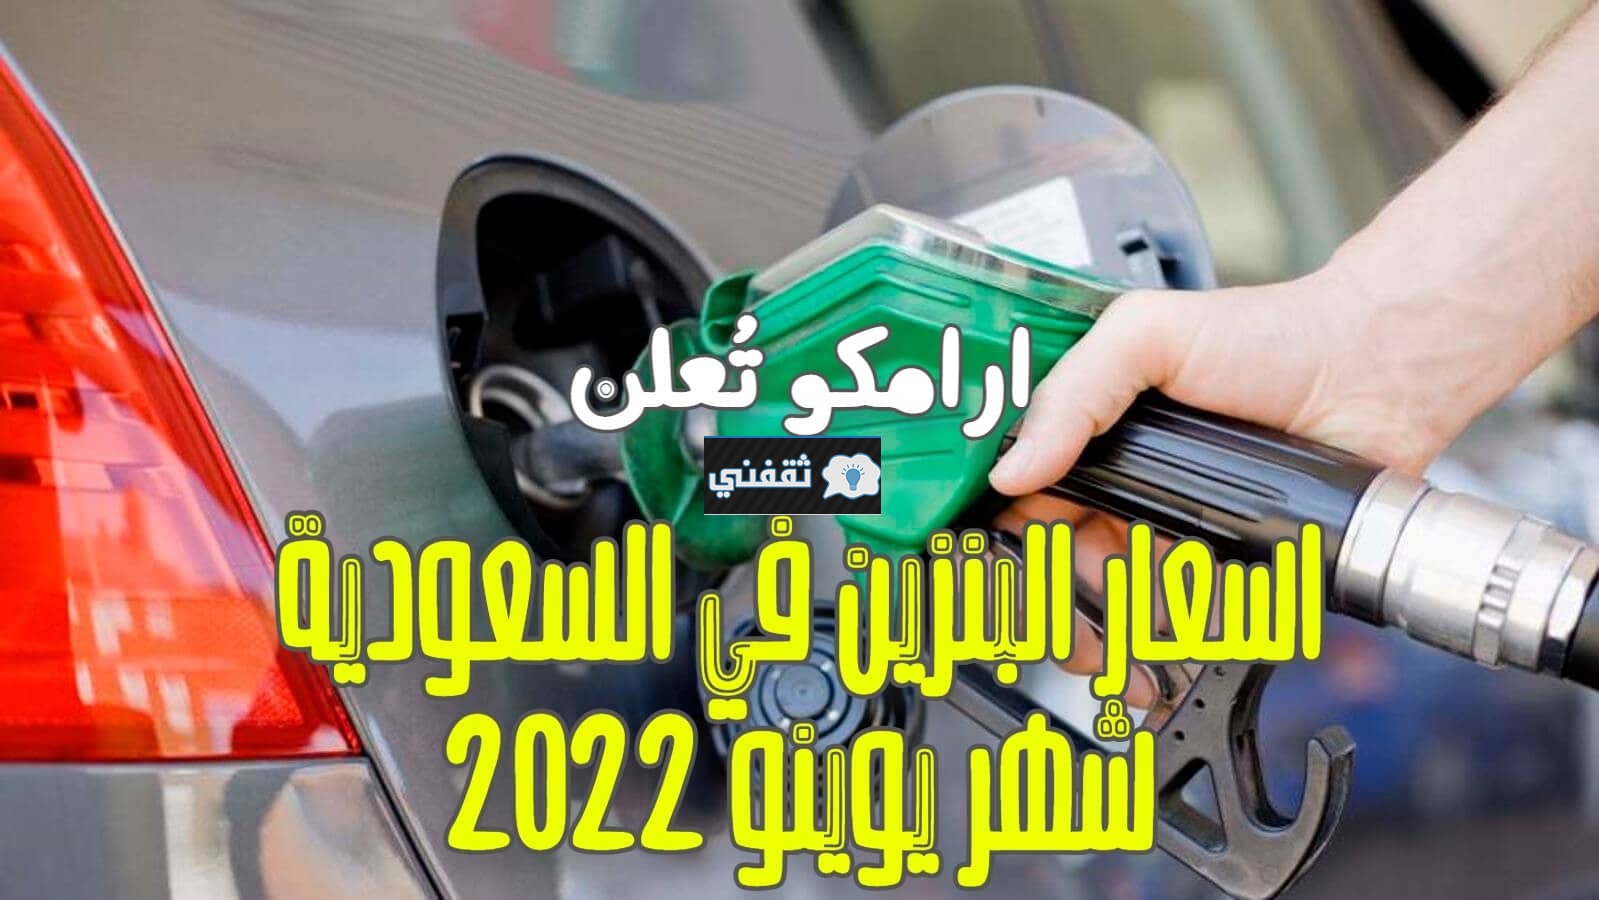 أسعار البنزين الجديدة في السعودية يونيو 2022 Aramco تعلن سعر تعبئة أسطوانة الغاز 18.85 ريال